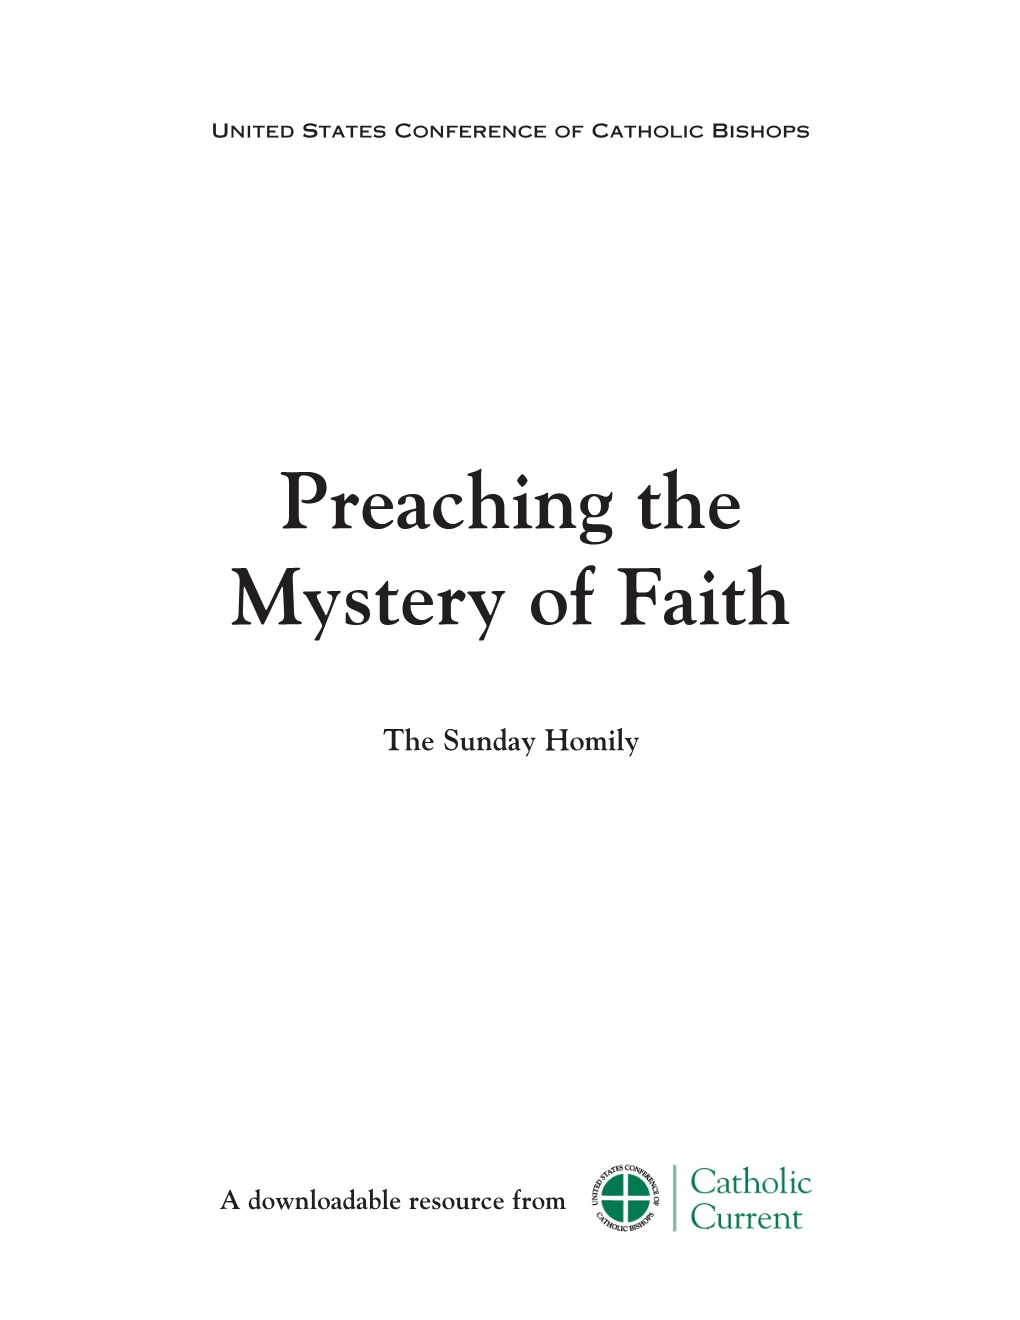 Preaching the Mystery of Faith